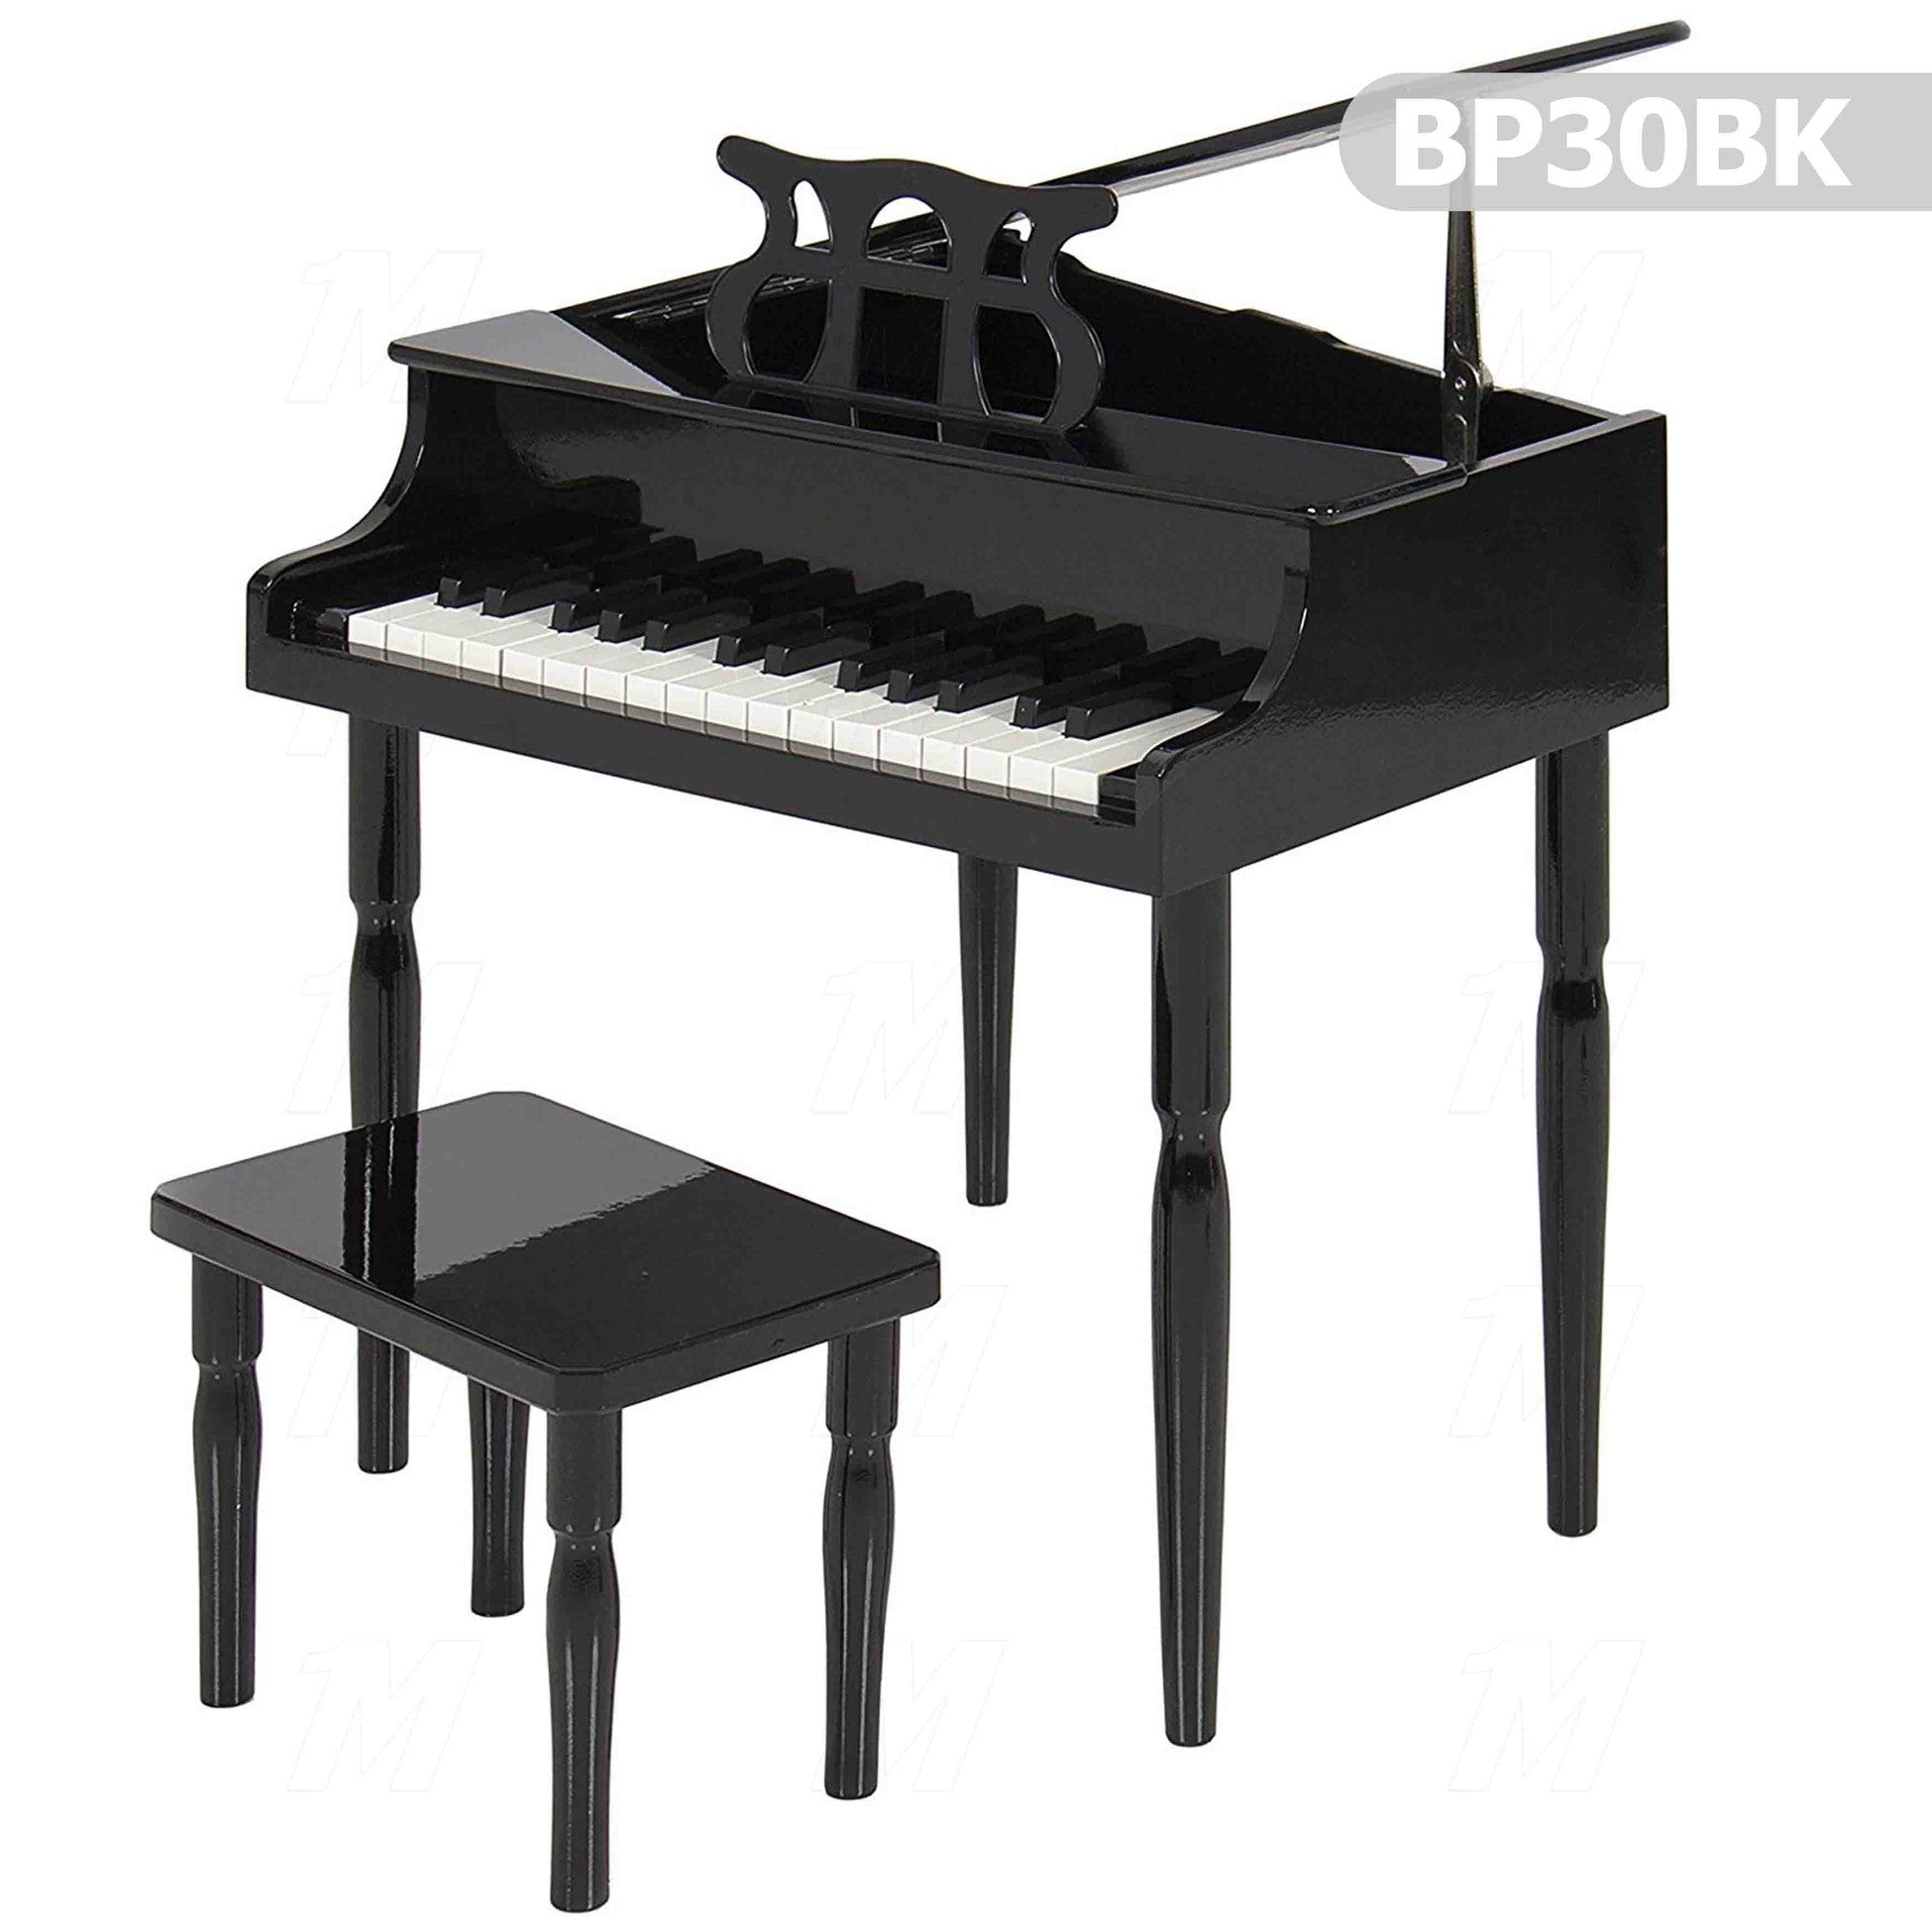 Çocuk için Ahşap Piyano BP30BK - Pazaribu